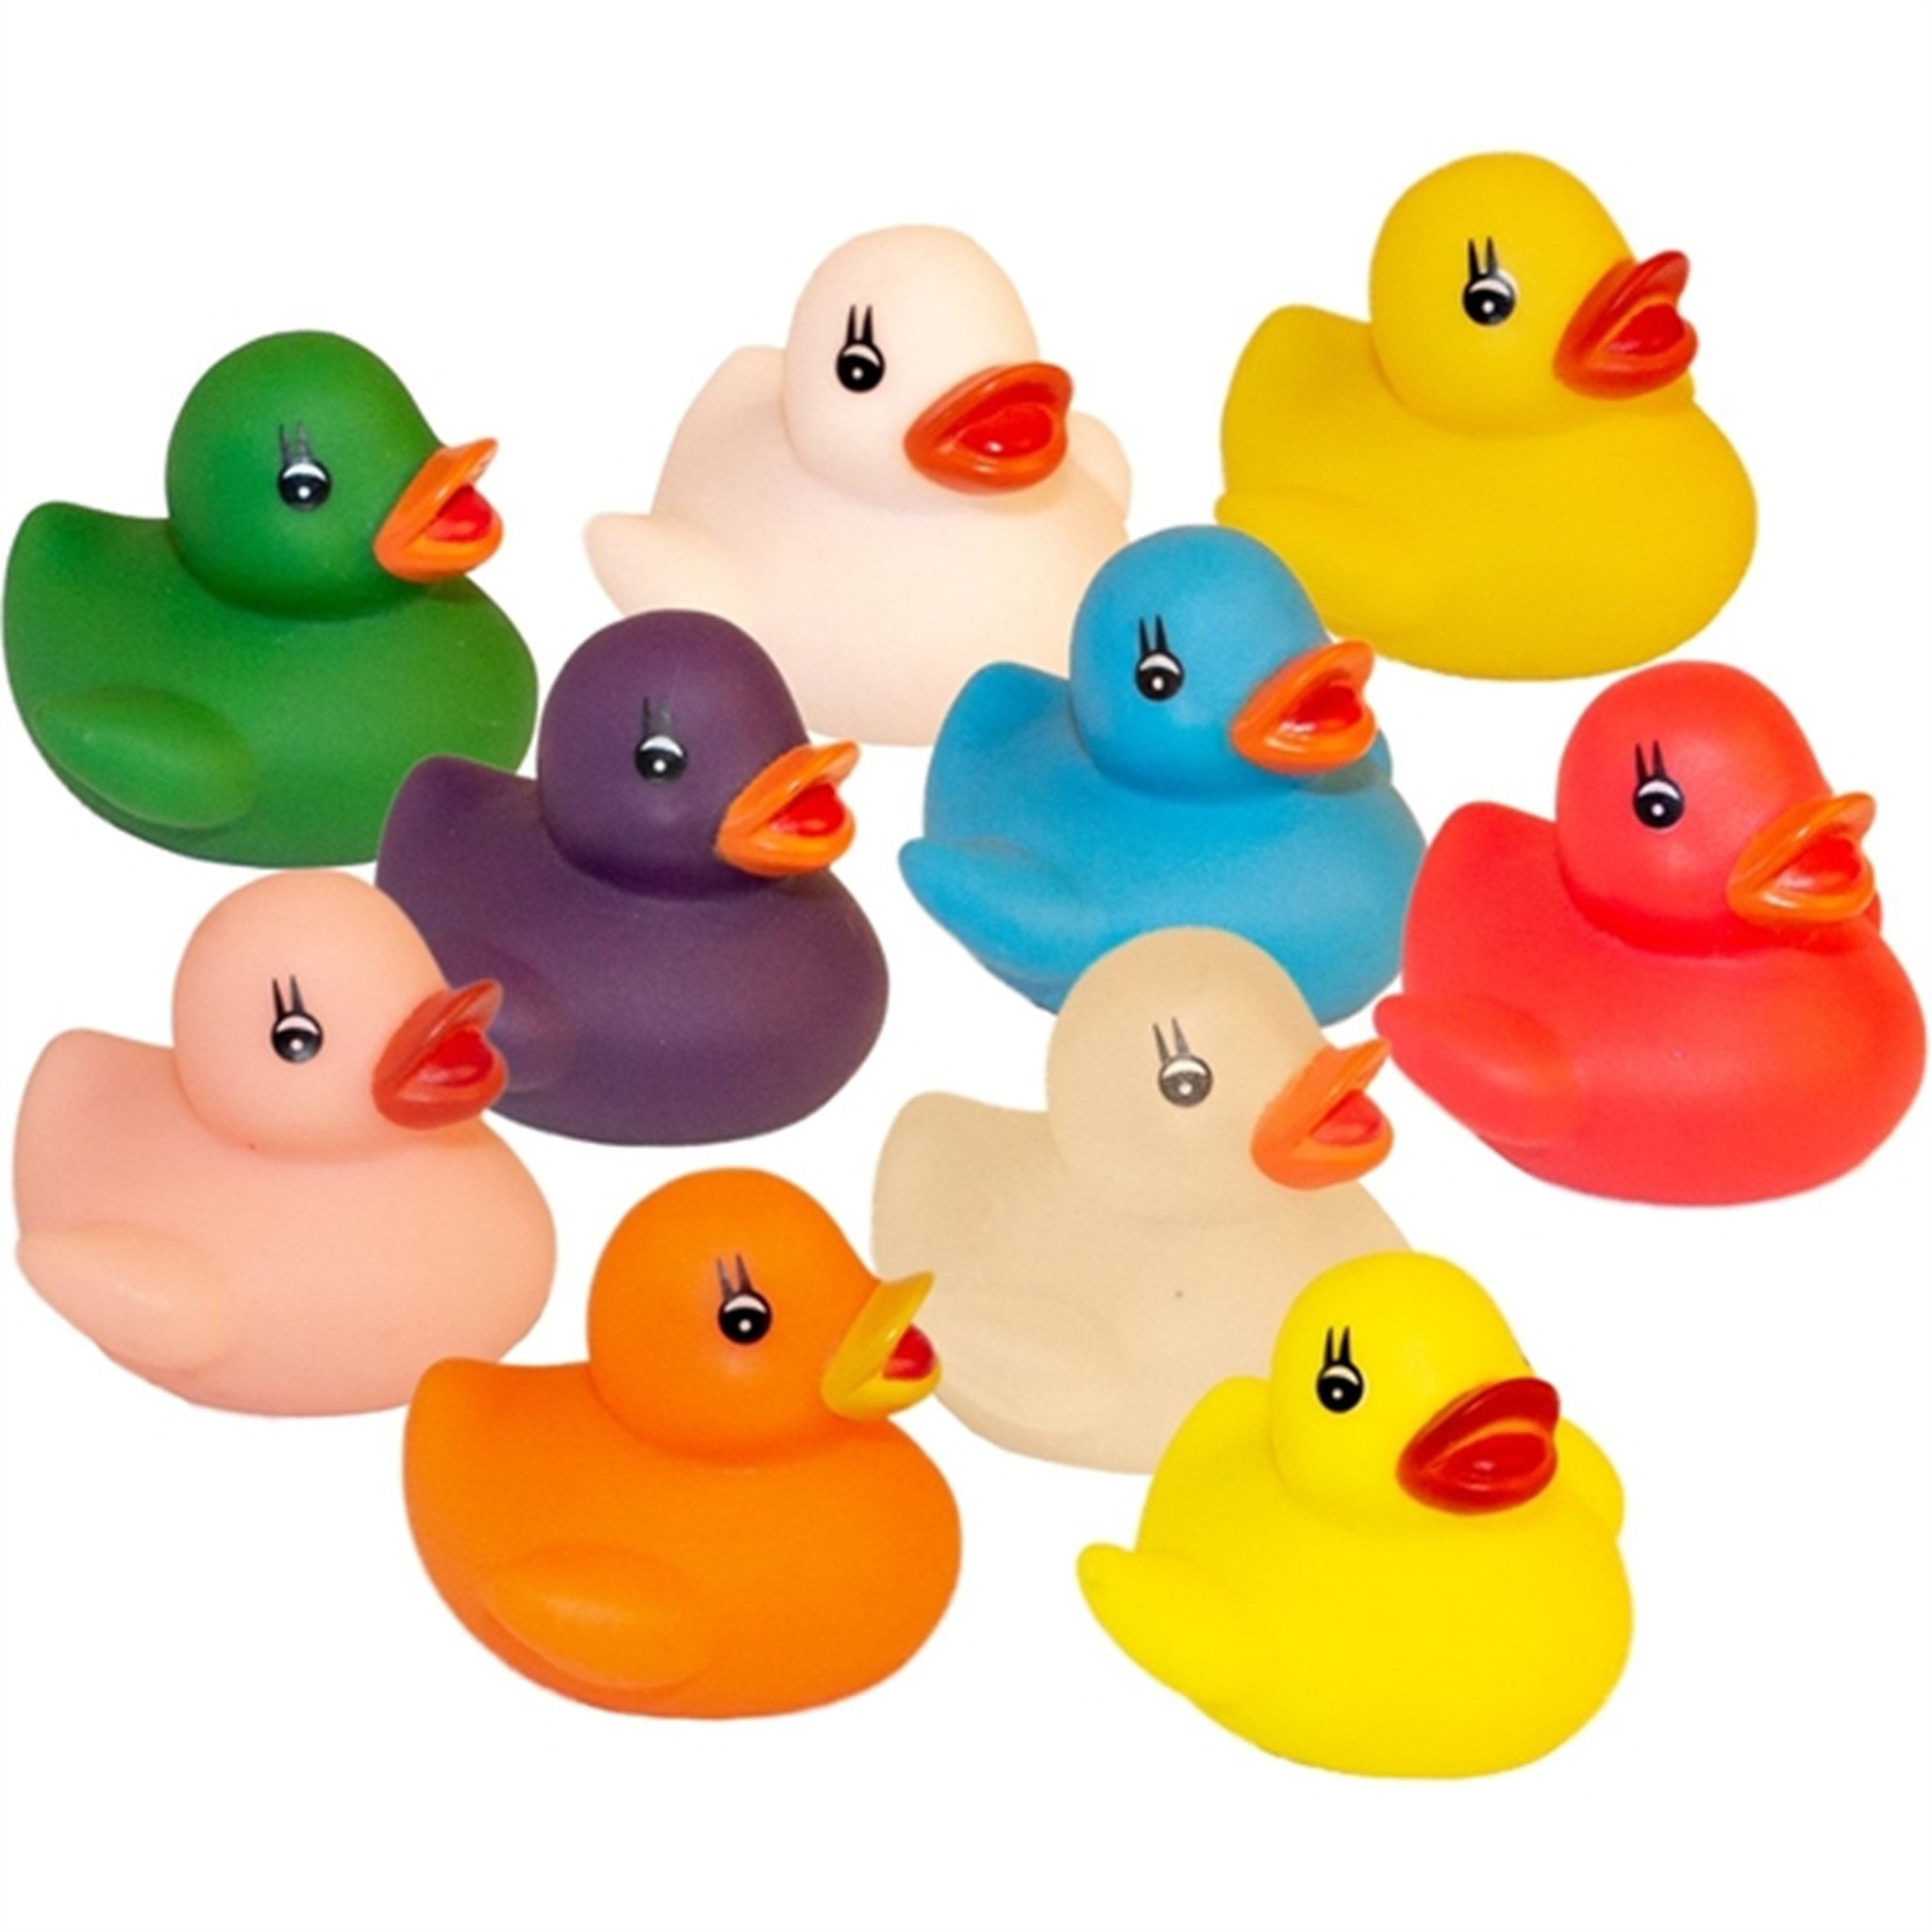 Magni Bath Ducks in a Set of 10 Pieces Multi 2